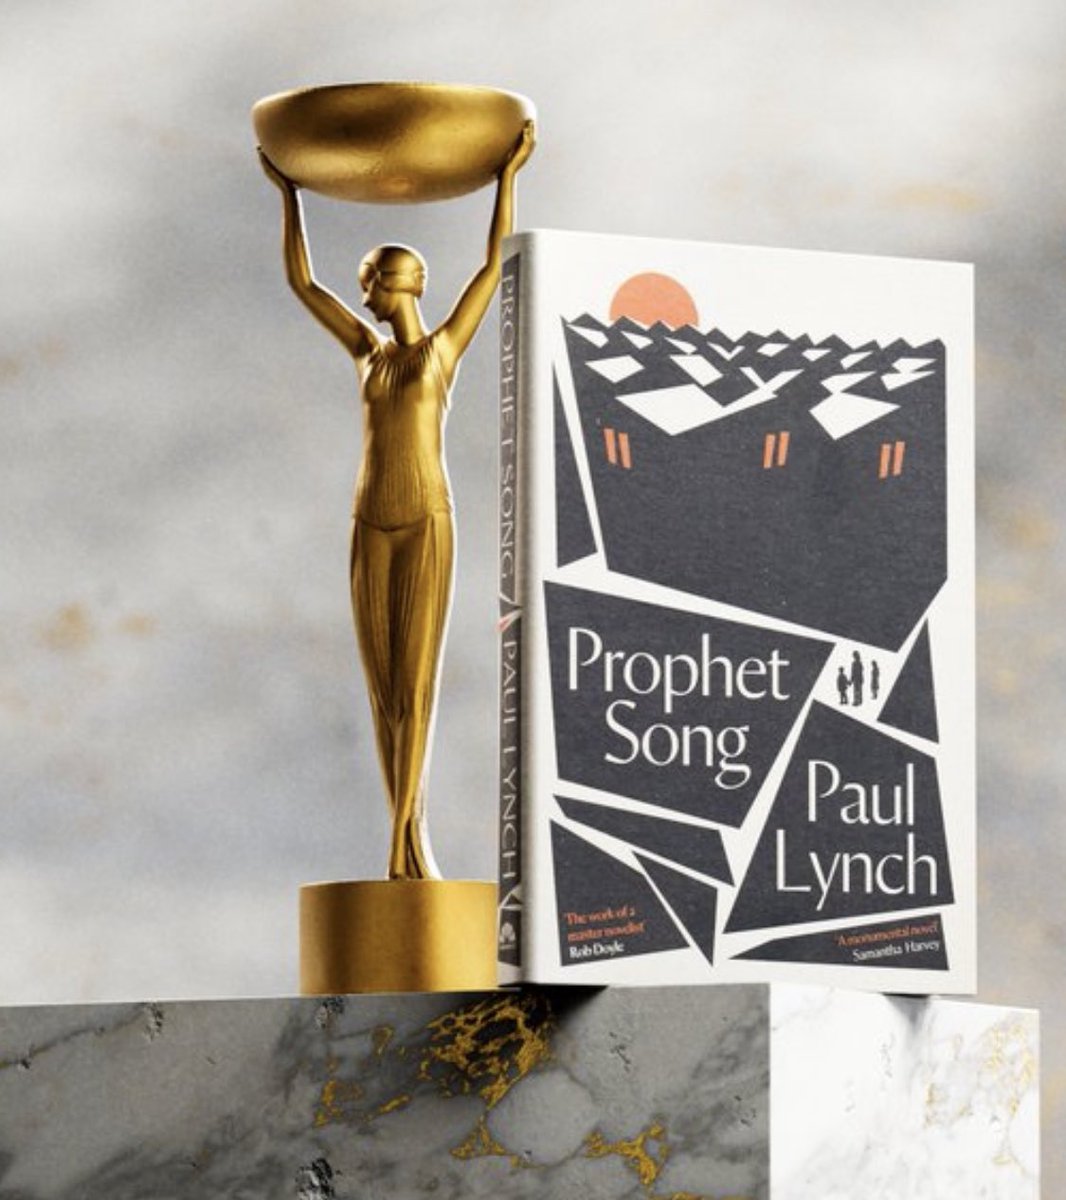 Prophet Song de Paul Lynch gana el Booker:
#BookerPrize2023